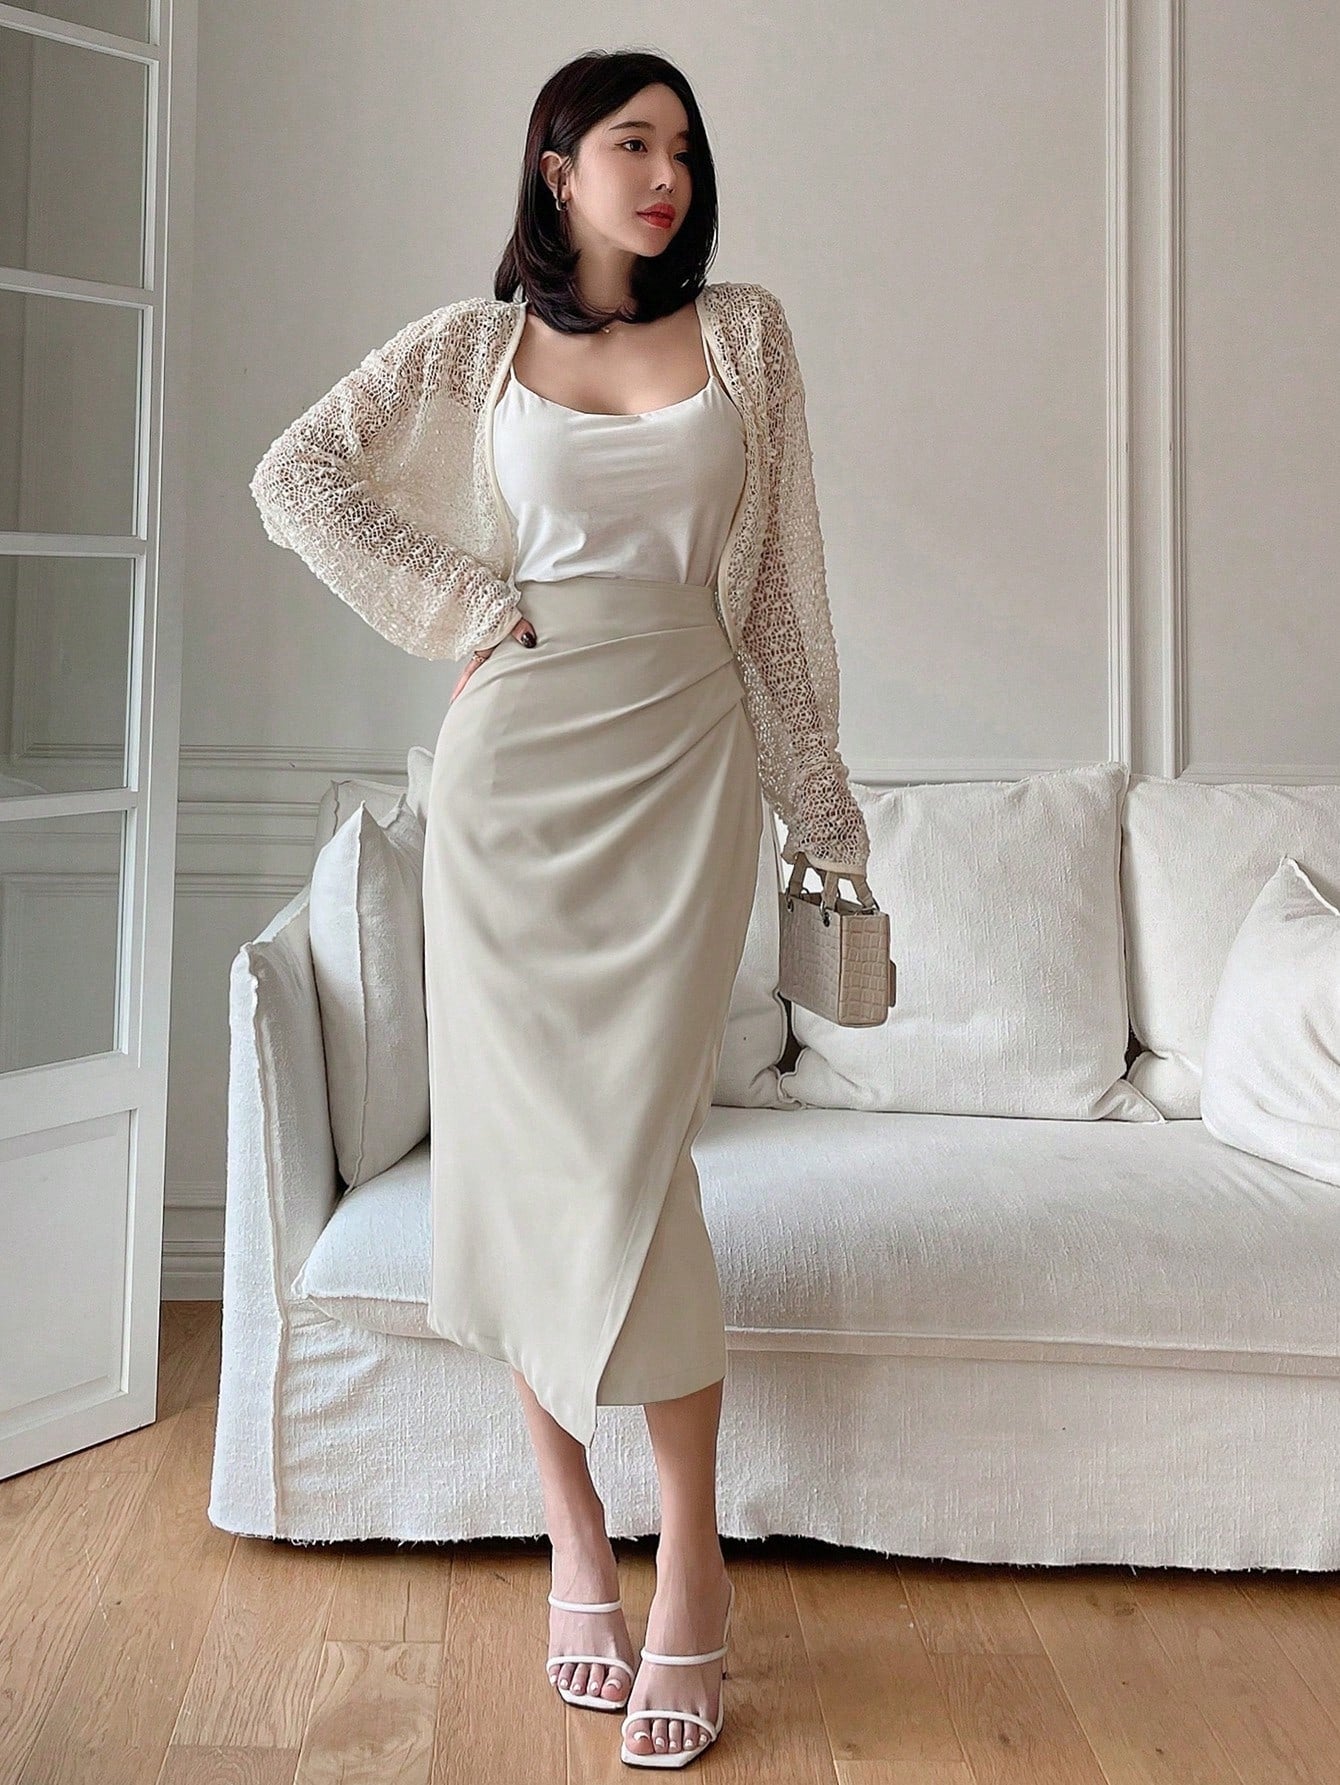 Women's Fashionable And Elegant Irregular Hem Pleated Skirt For Work